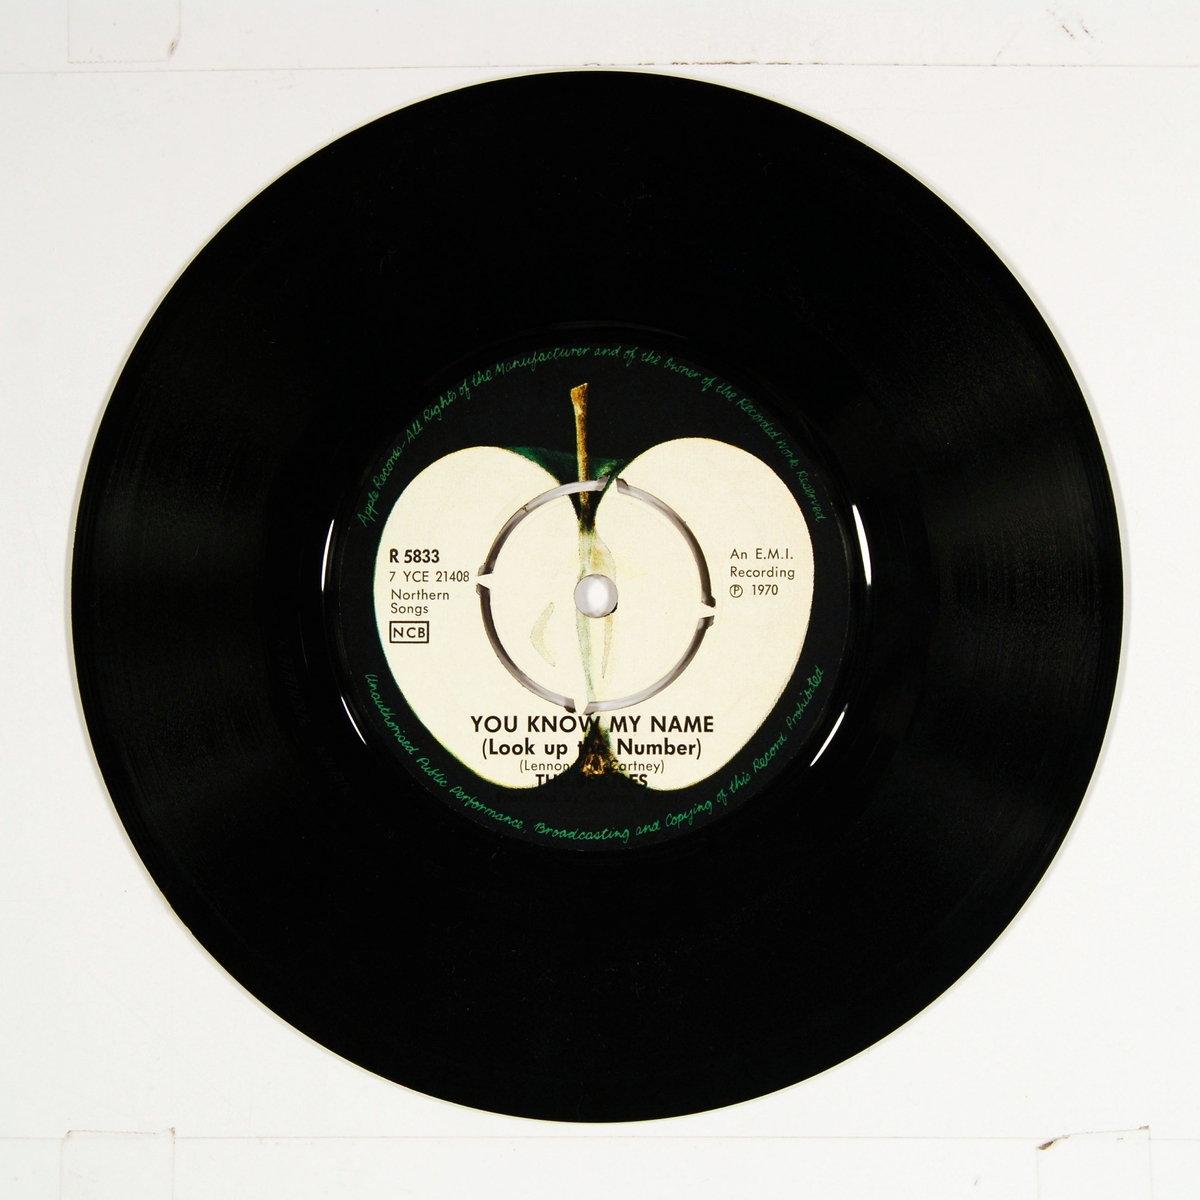 Rutenett med bilde av hvert av medlemmene i "The Beatles" på coveret. Plateetiketten viser et grønt eple på A-siden og et delt eple på B-siden.